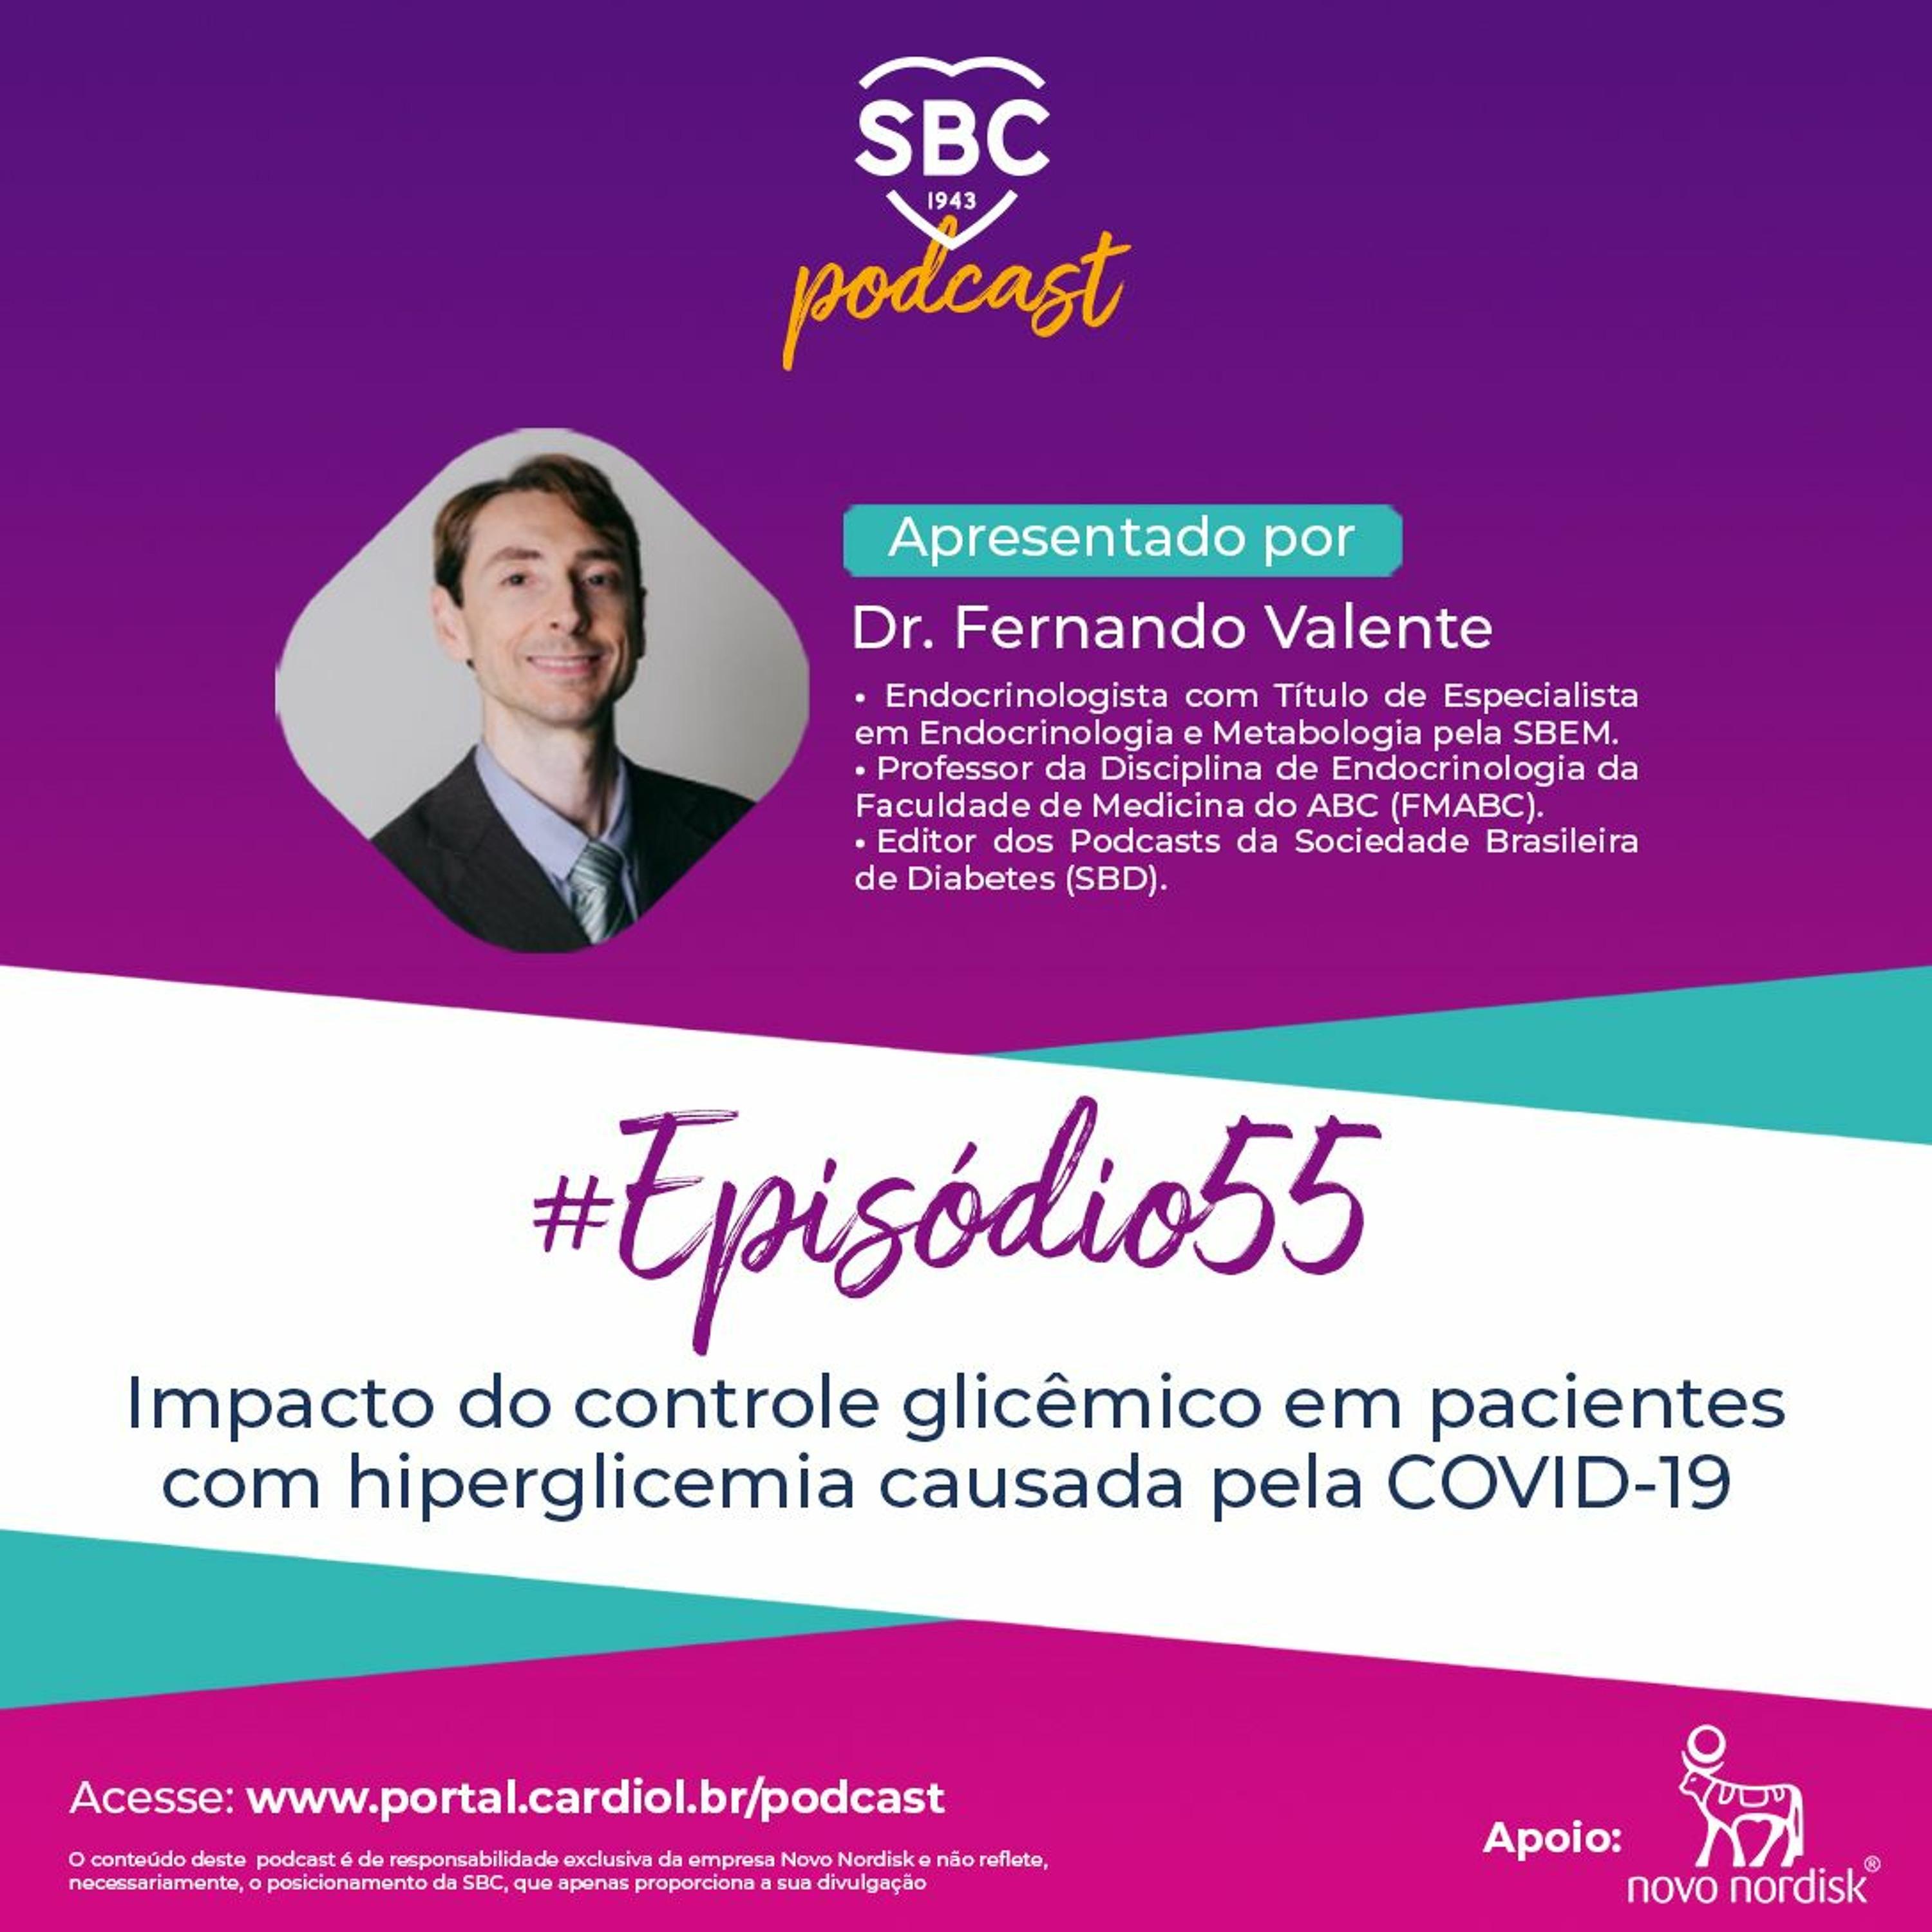 Neste episódio, o Dr. Fernando Valente abordará o Impacto do controle glicêmico em pacientes com hiperglicemia causada pela COVID-19.